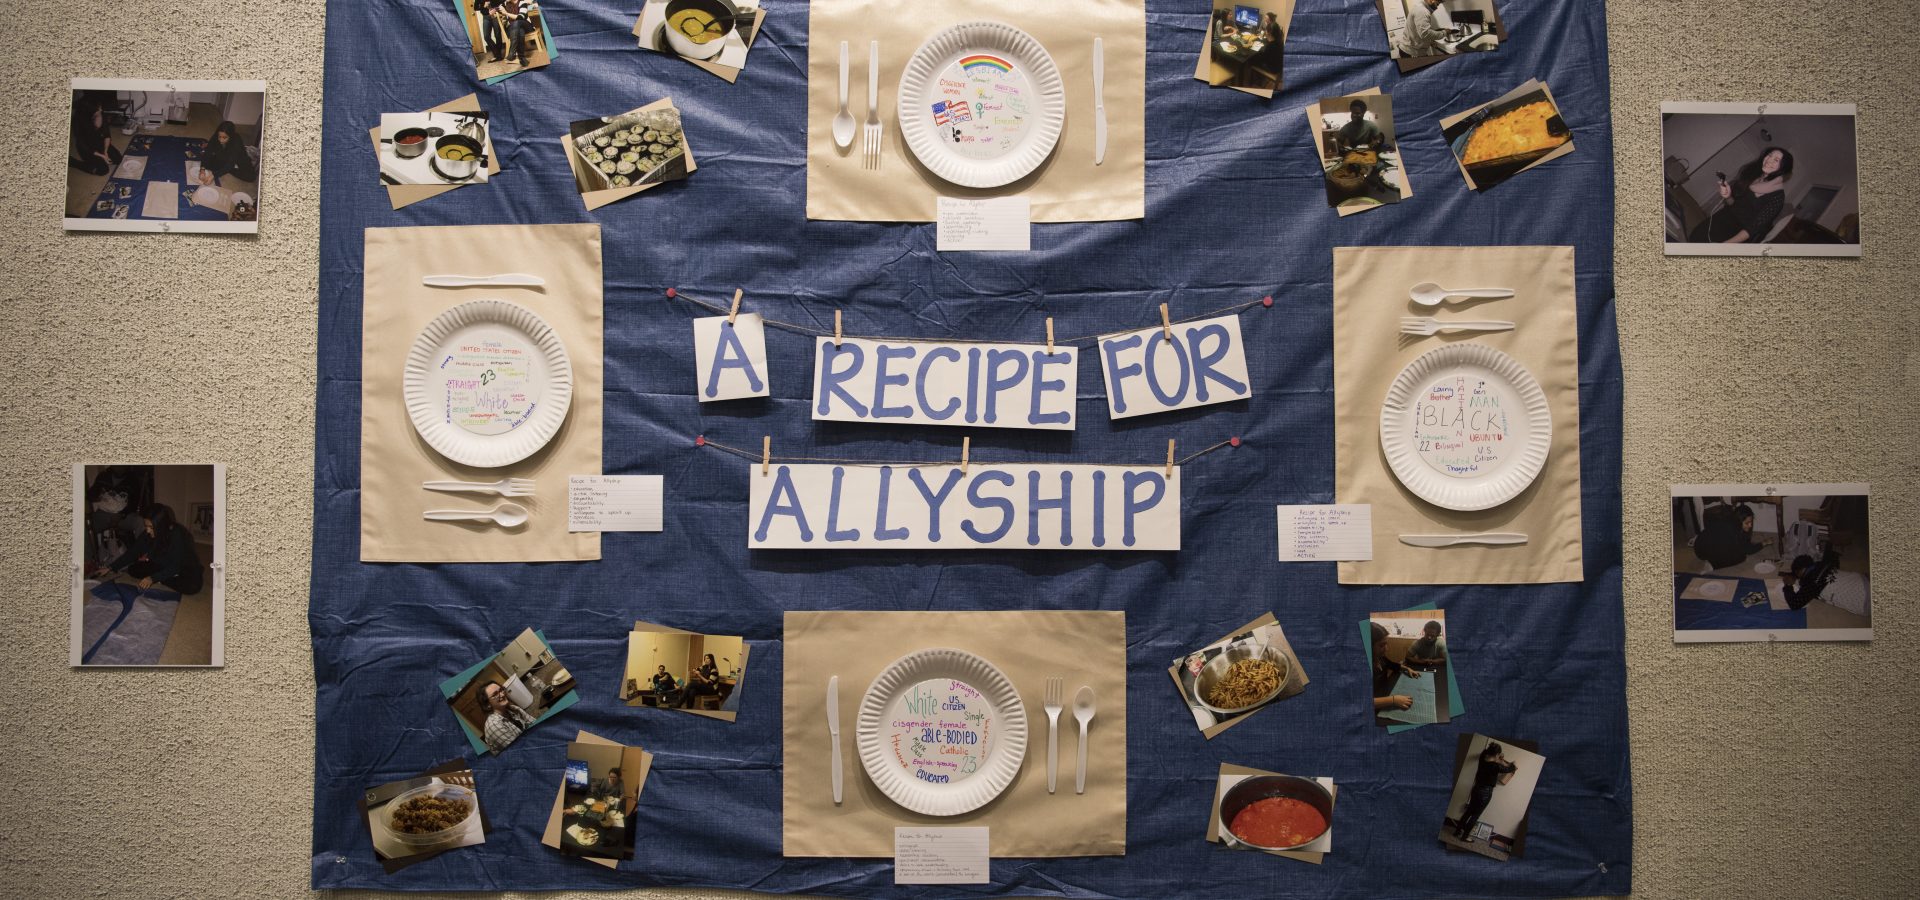 Allyship a recipe for allyship artwork